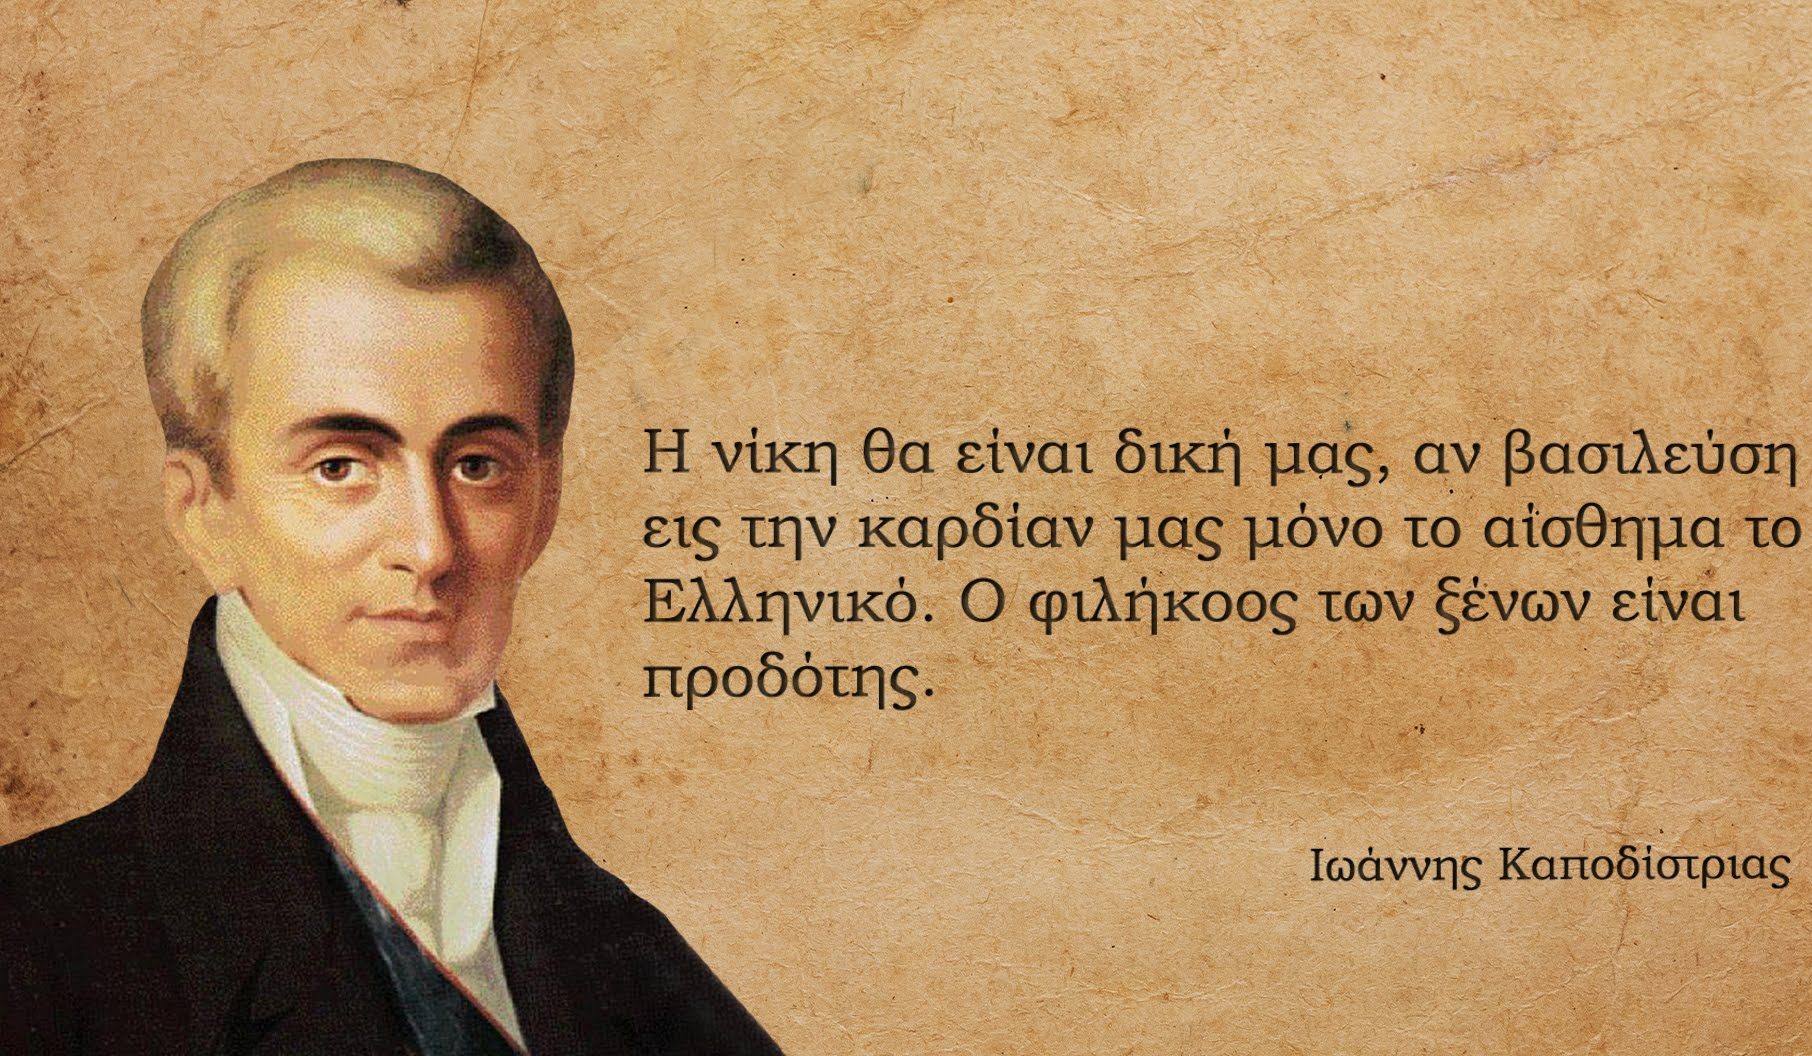 Πόσο μοιάζει το 2017 με το 1830 μέσα από τα λόγια του συγκλονιστικού Ιωάννη Καποδίστρια – Pronews.gr